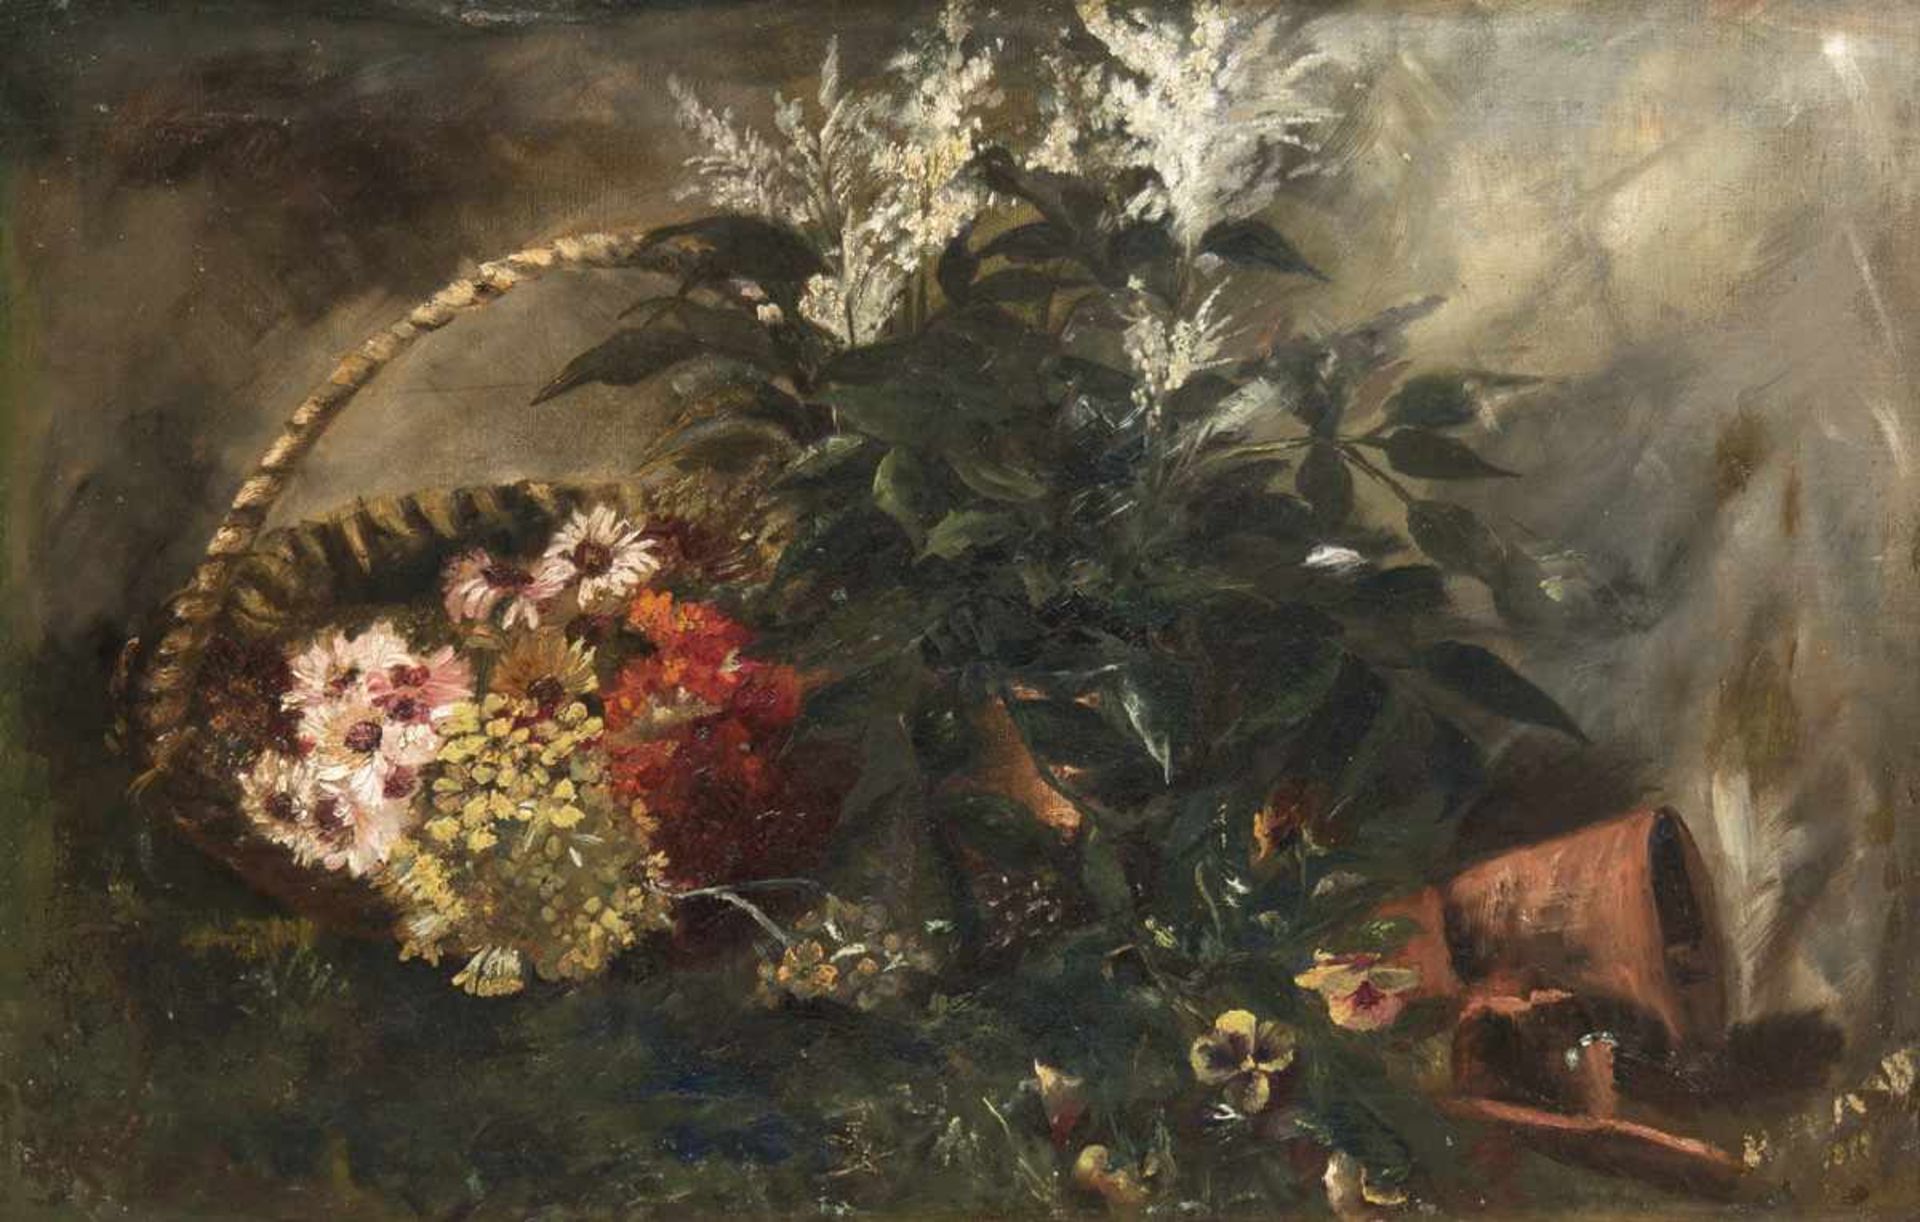 Maler Anfang des 19. Jh. "Stilleben mit Blumenkorb", Öl/Lw., unleserl. signiert unddatiert 1819 u.